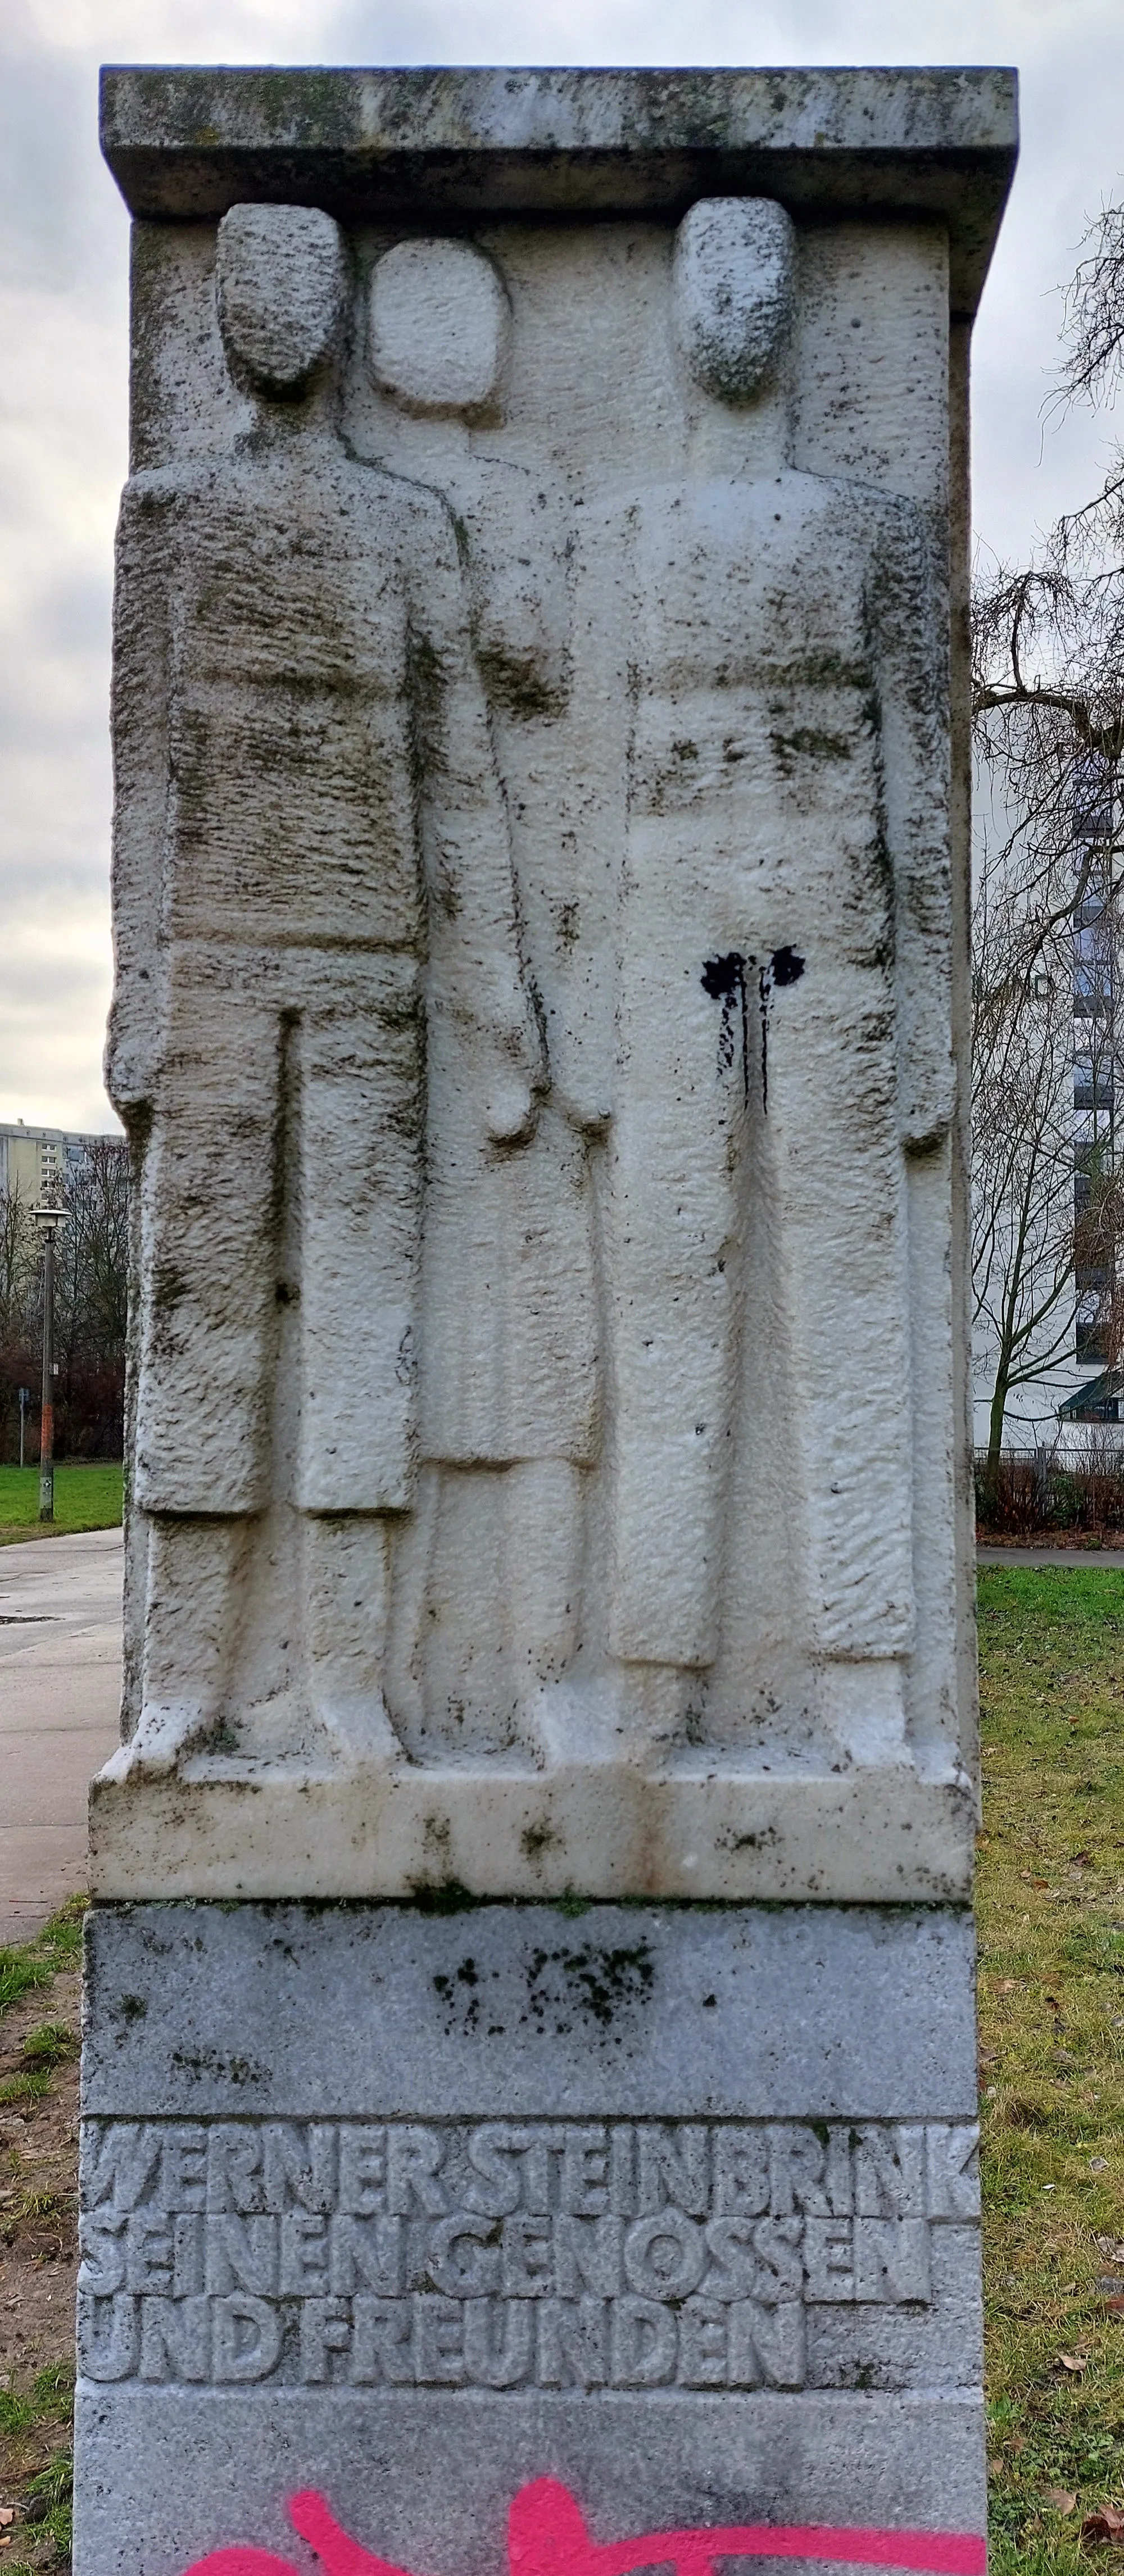 Photo showing: Memorial stone, "Werner-Steinbrink-Denkmal" by Siegfried Wehrmeister, 1987, Mühlenbecker Weg, Berlin-Marzahn, Germany